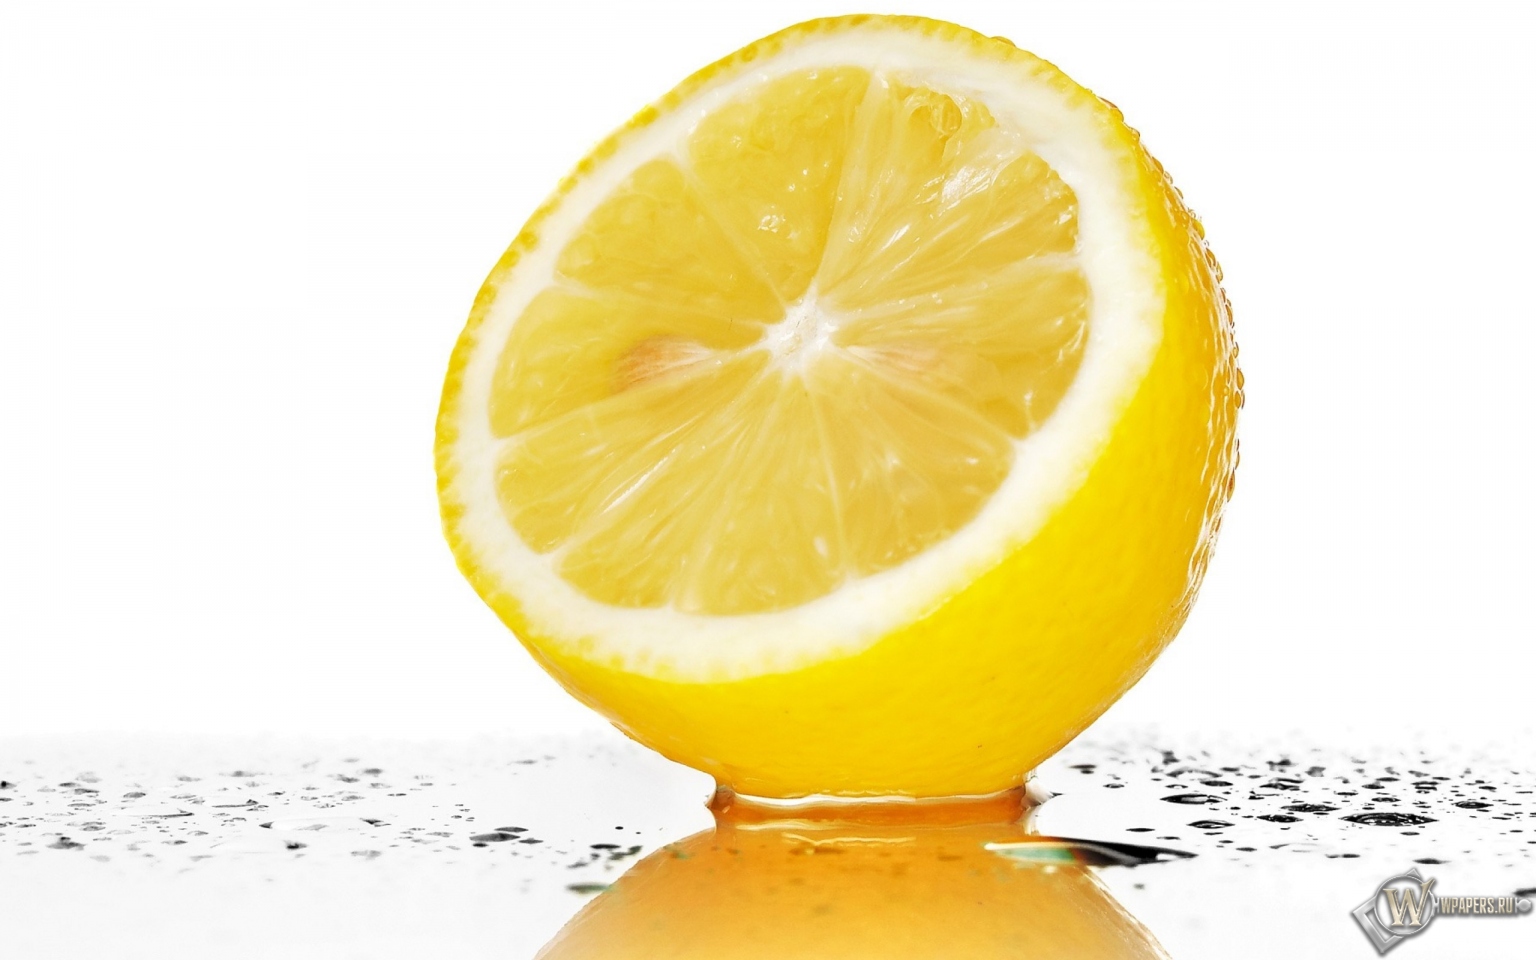 Лимон 1536x960